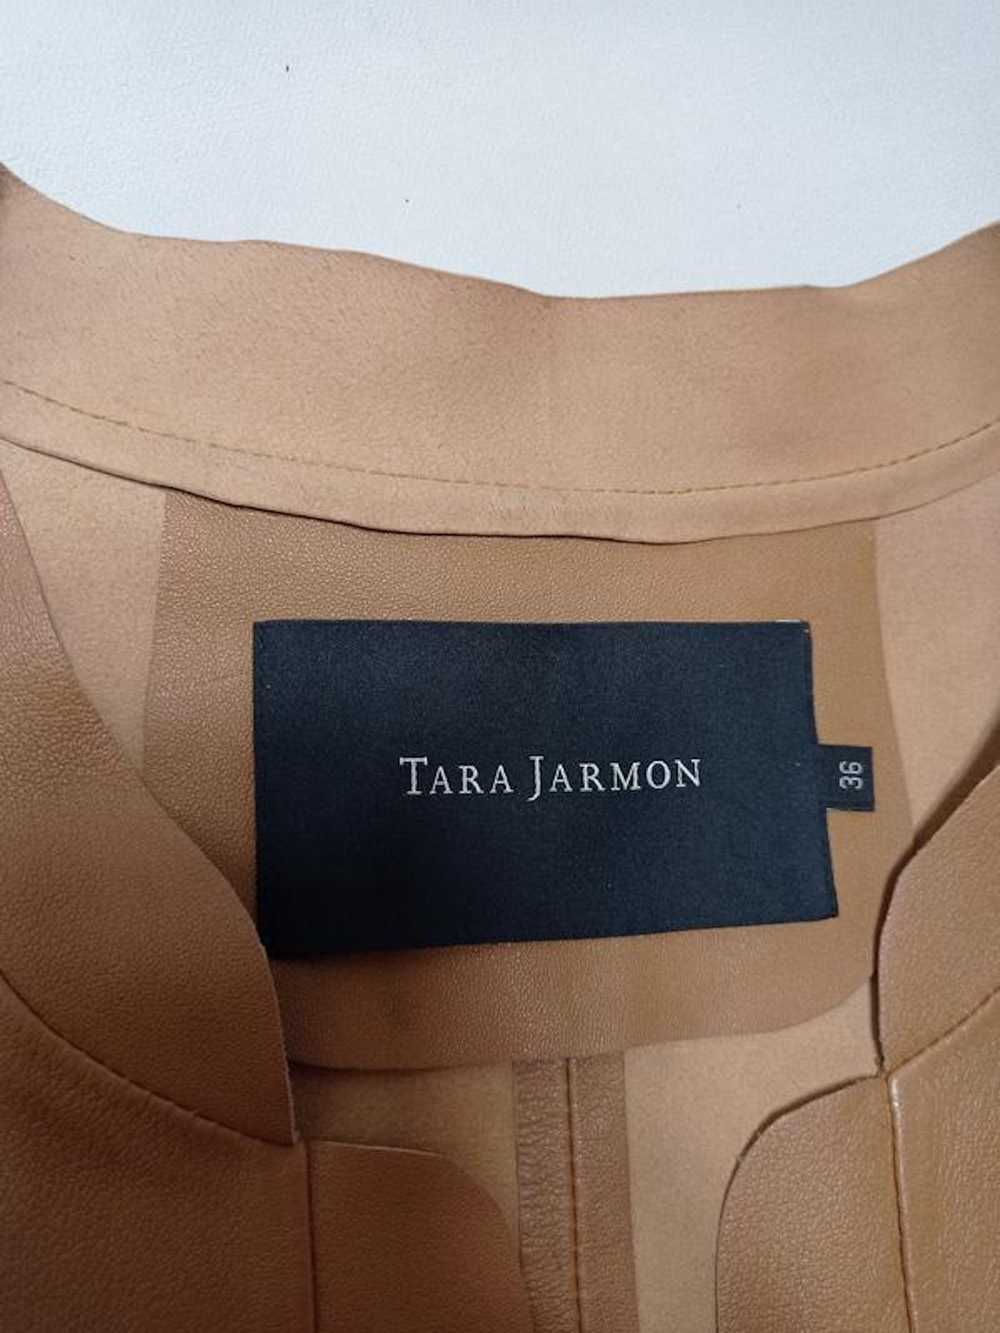 Tara Jarmon Tara jarmon leather jacket jacket ori… - image 7